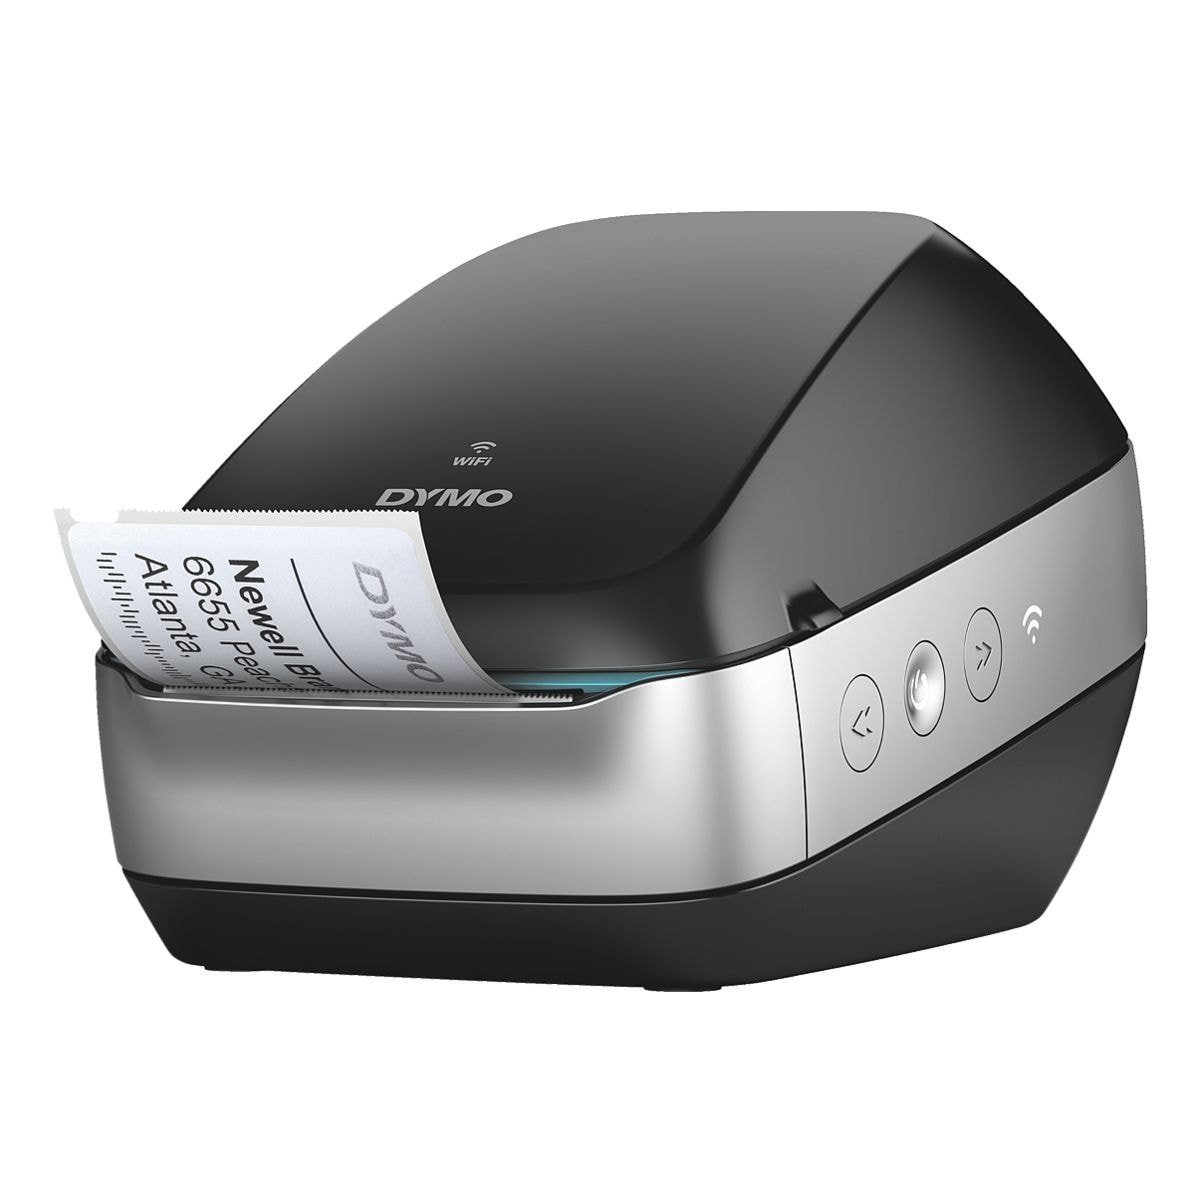 DYMO LabelWriter Wireless mobiler Drucker, Wi-Fi) (für im Thermo-Direktdruck, Etiketten